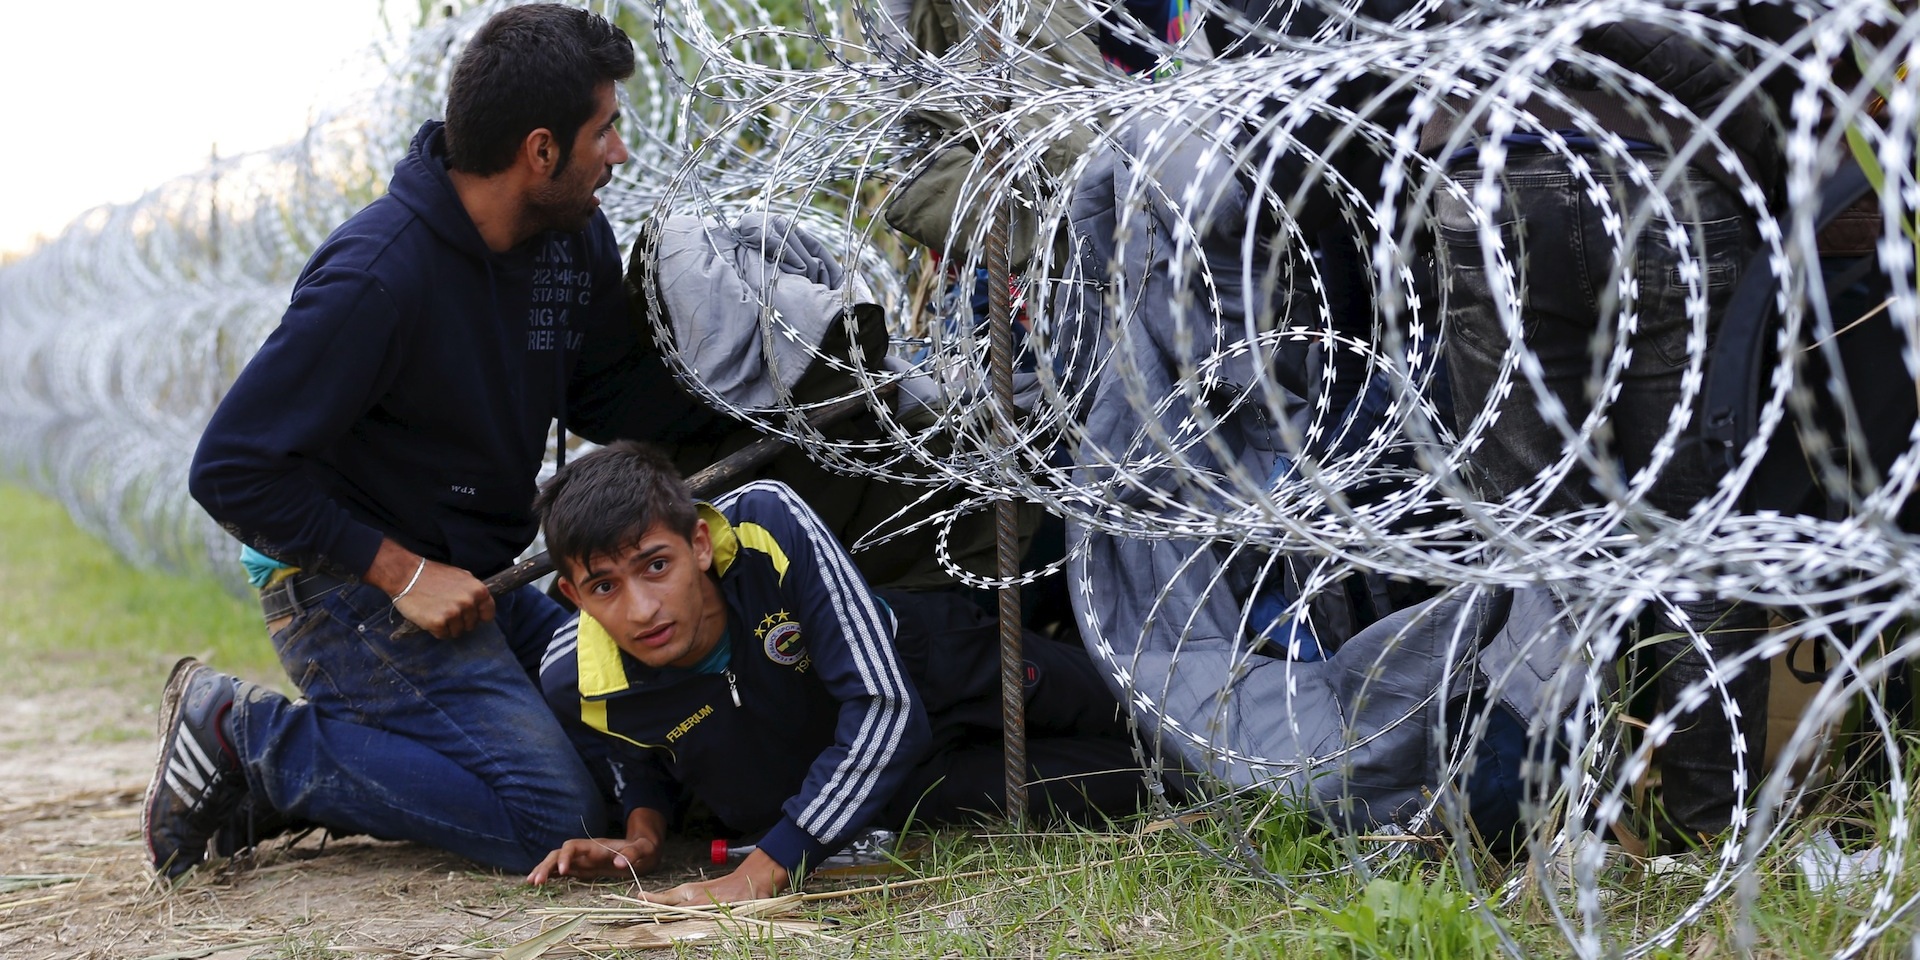 Закрытие границ в Европе приведет к хаосу